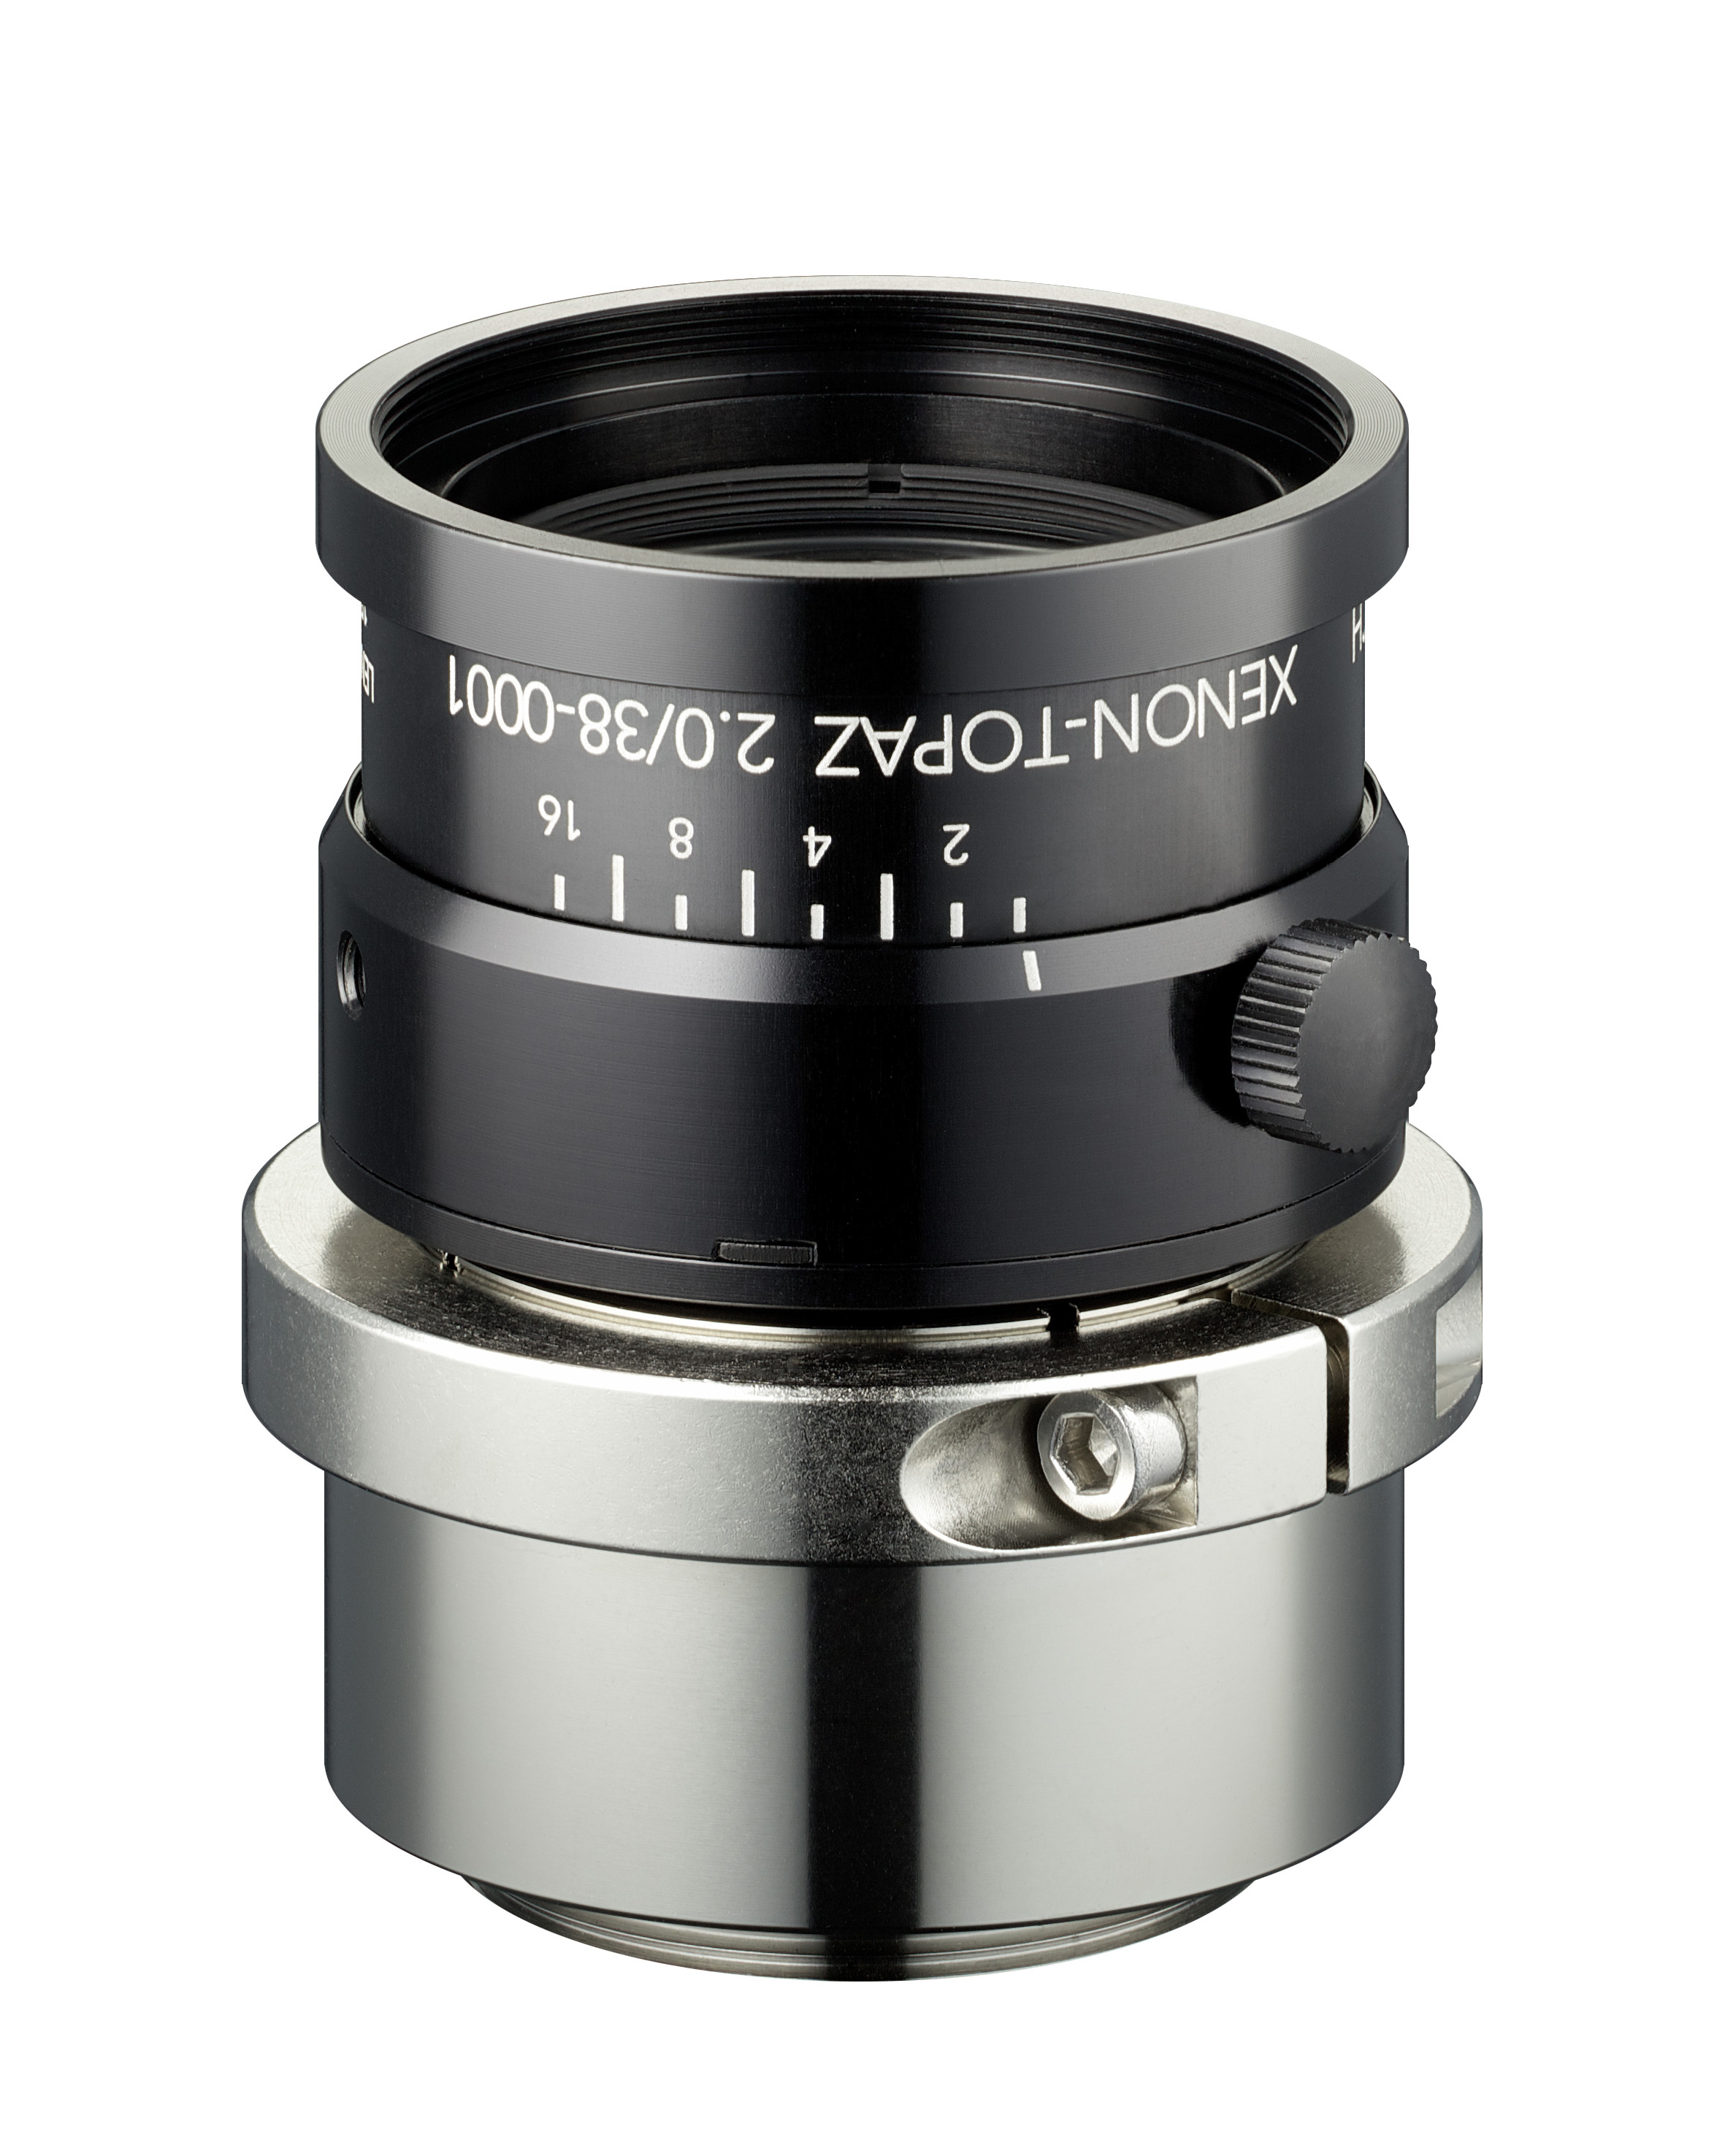 High-resolution Schneider-Kreuznach Xenon-Topaz lenses for 1.1” sensors